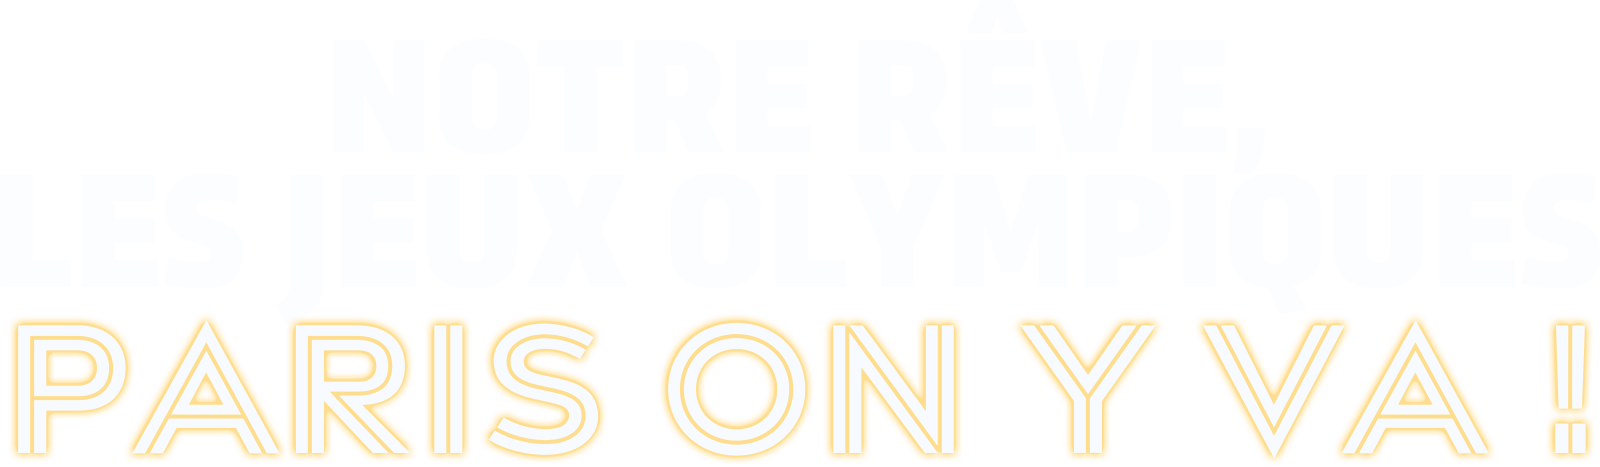 Notre Rêve, Jeux Olympiques – Paris on y va !